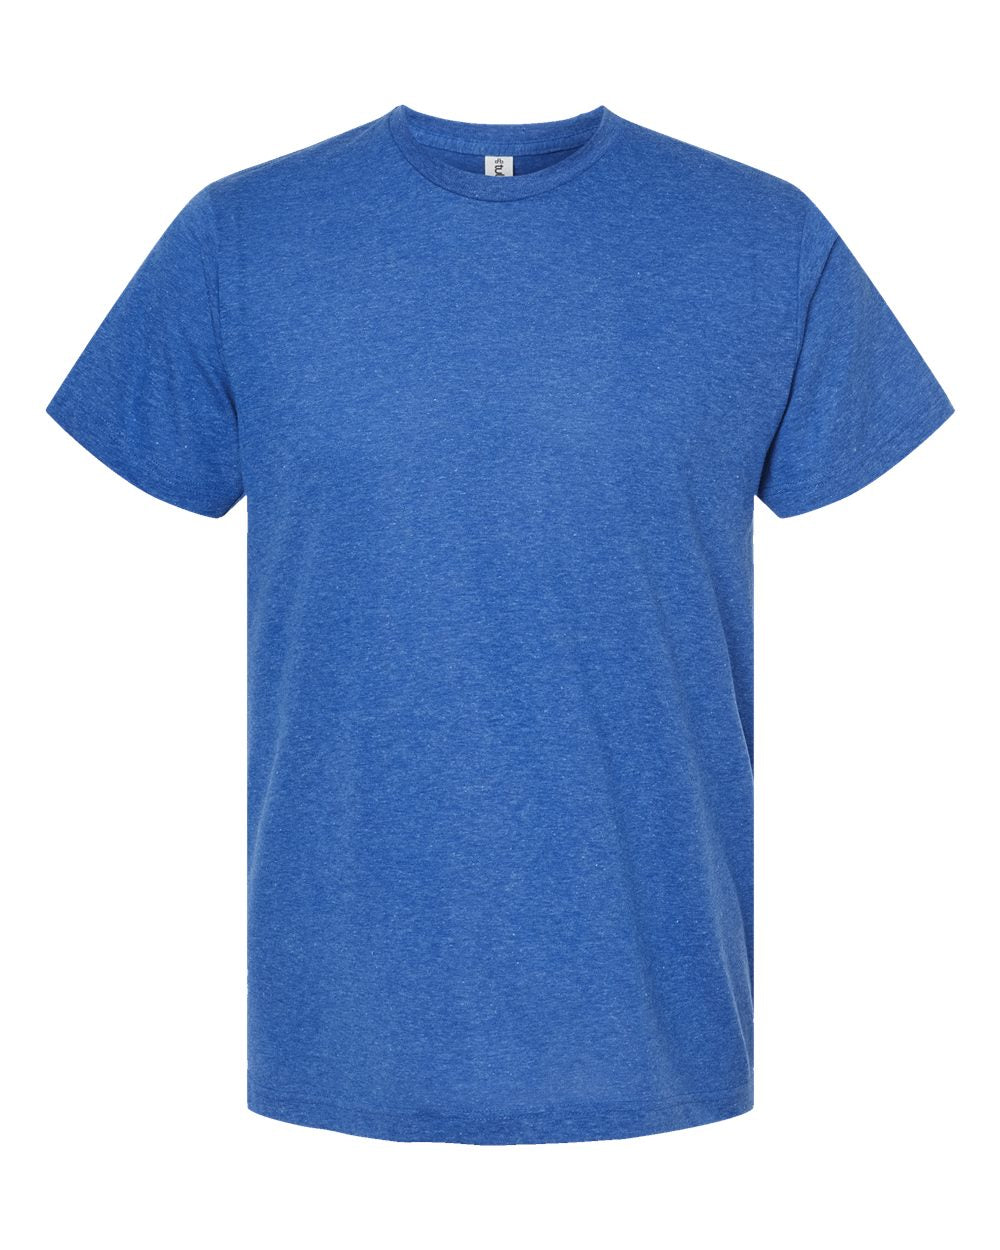 Tultex 241 Adult Shirt - XS-XL